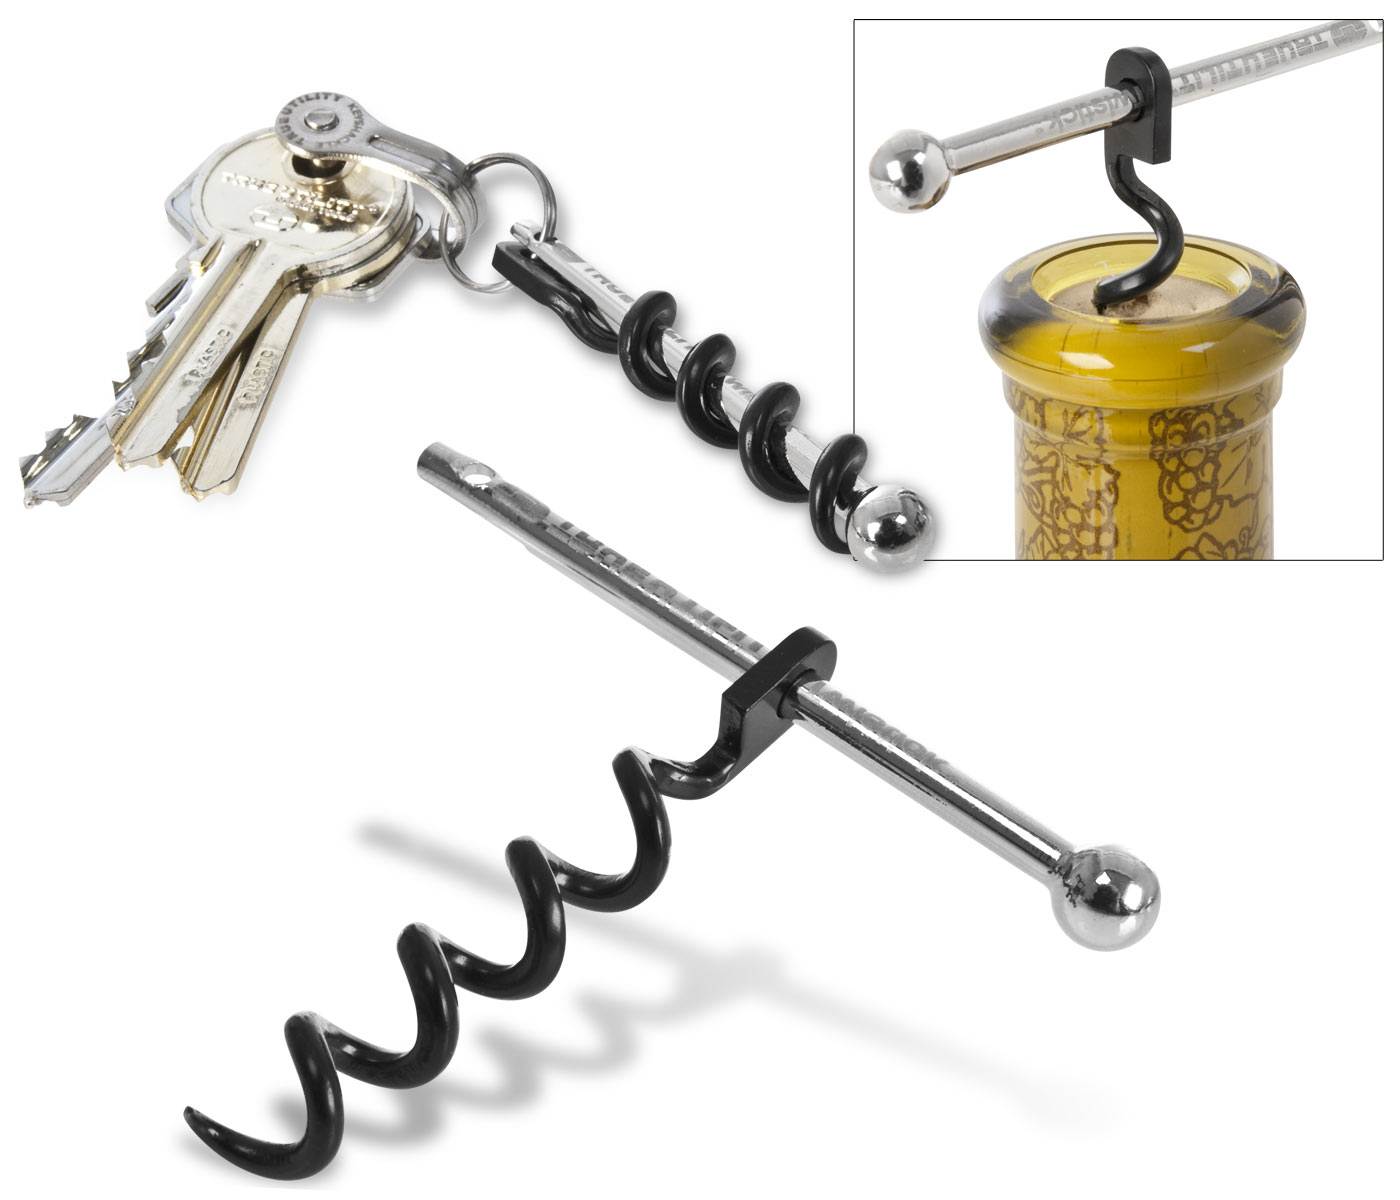 World’s Smallest Corkscrew Hooks On Your Key Ring.